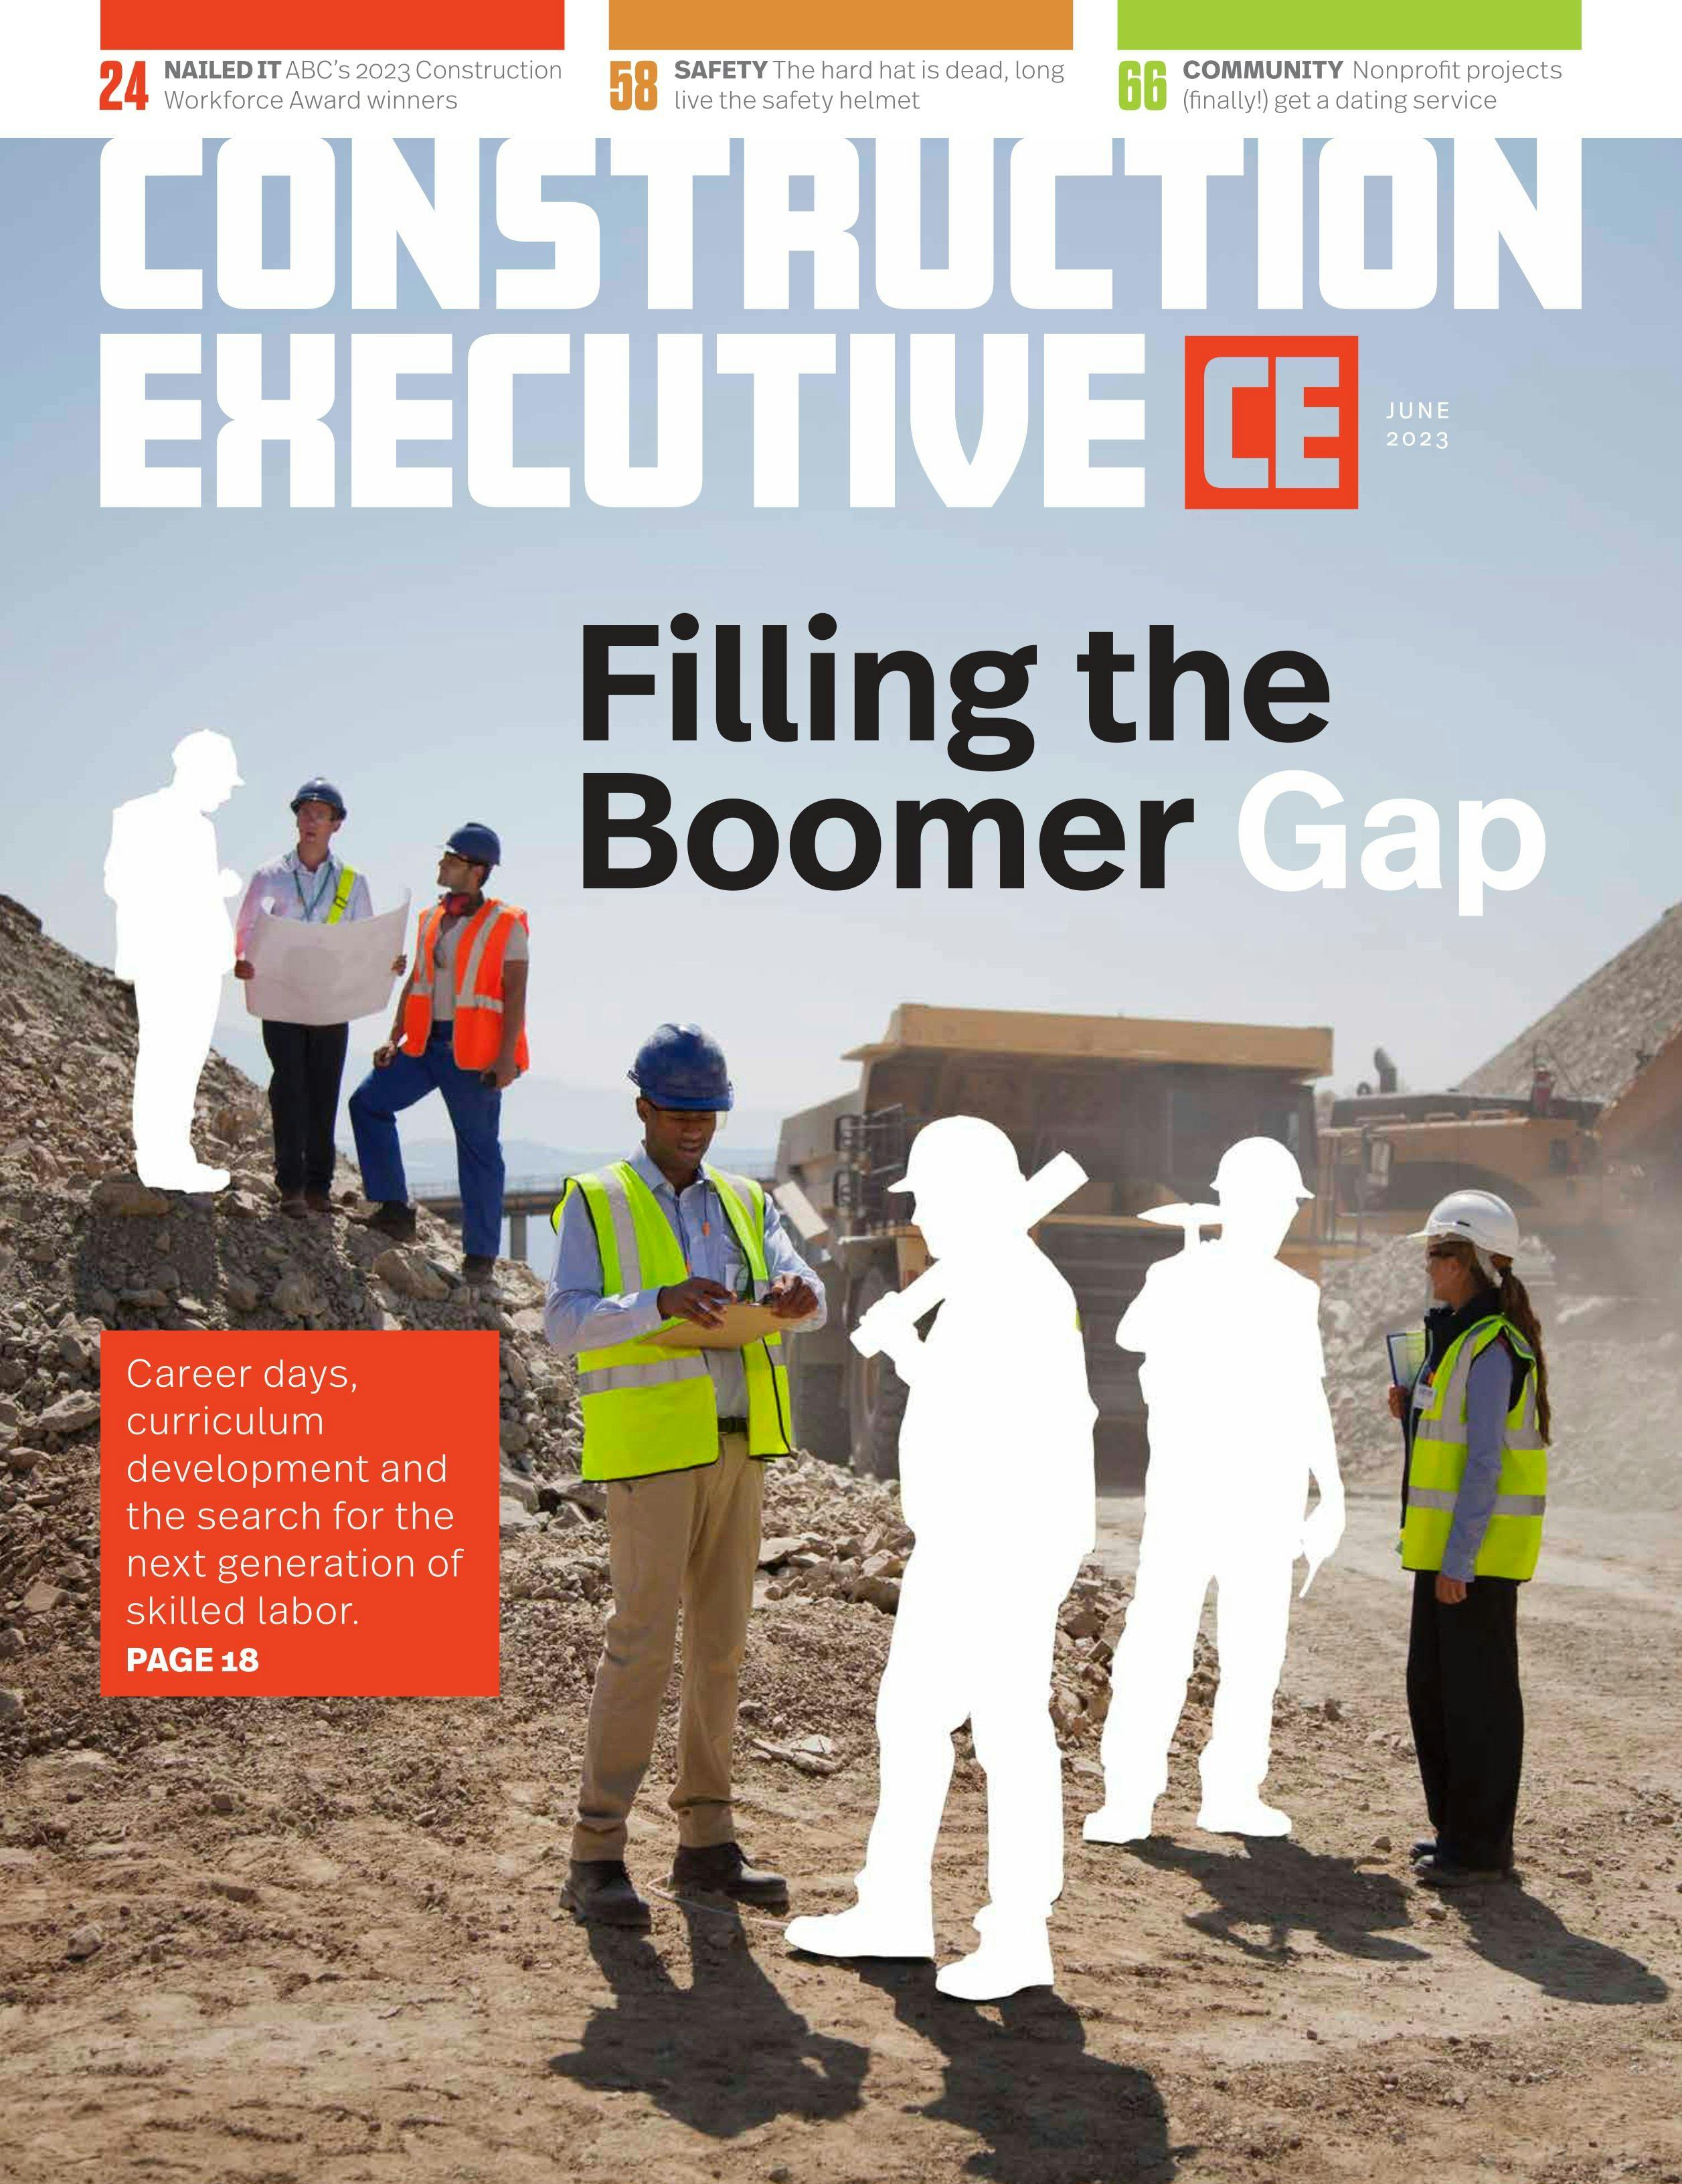 Construction Executive Cover Art